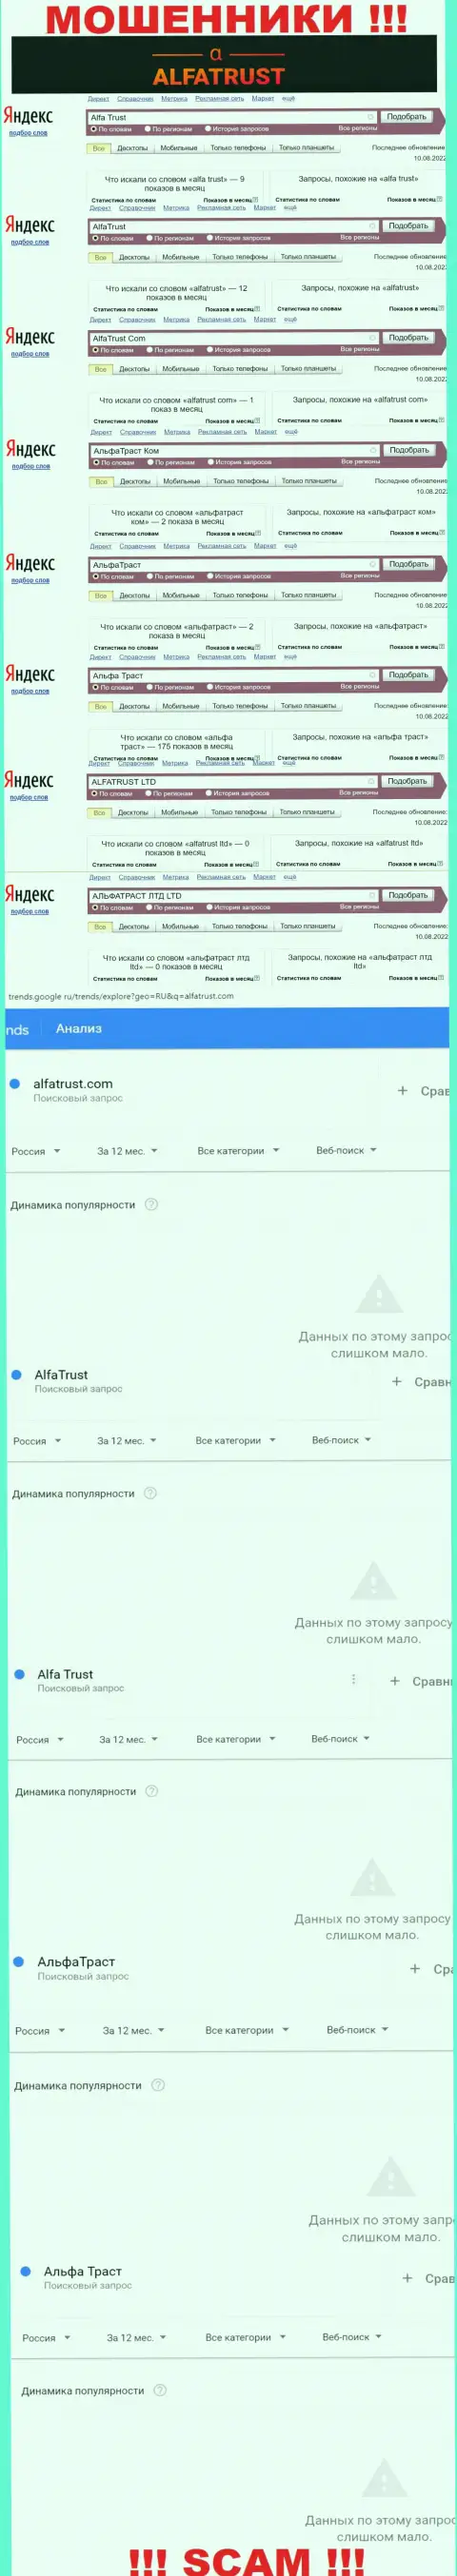 Результат online запросов инфы про мошенников AlfaTrust во всемирной сети